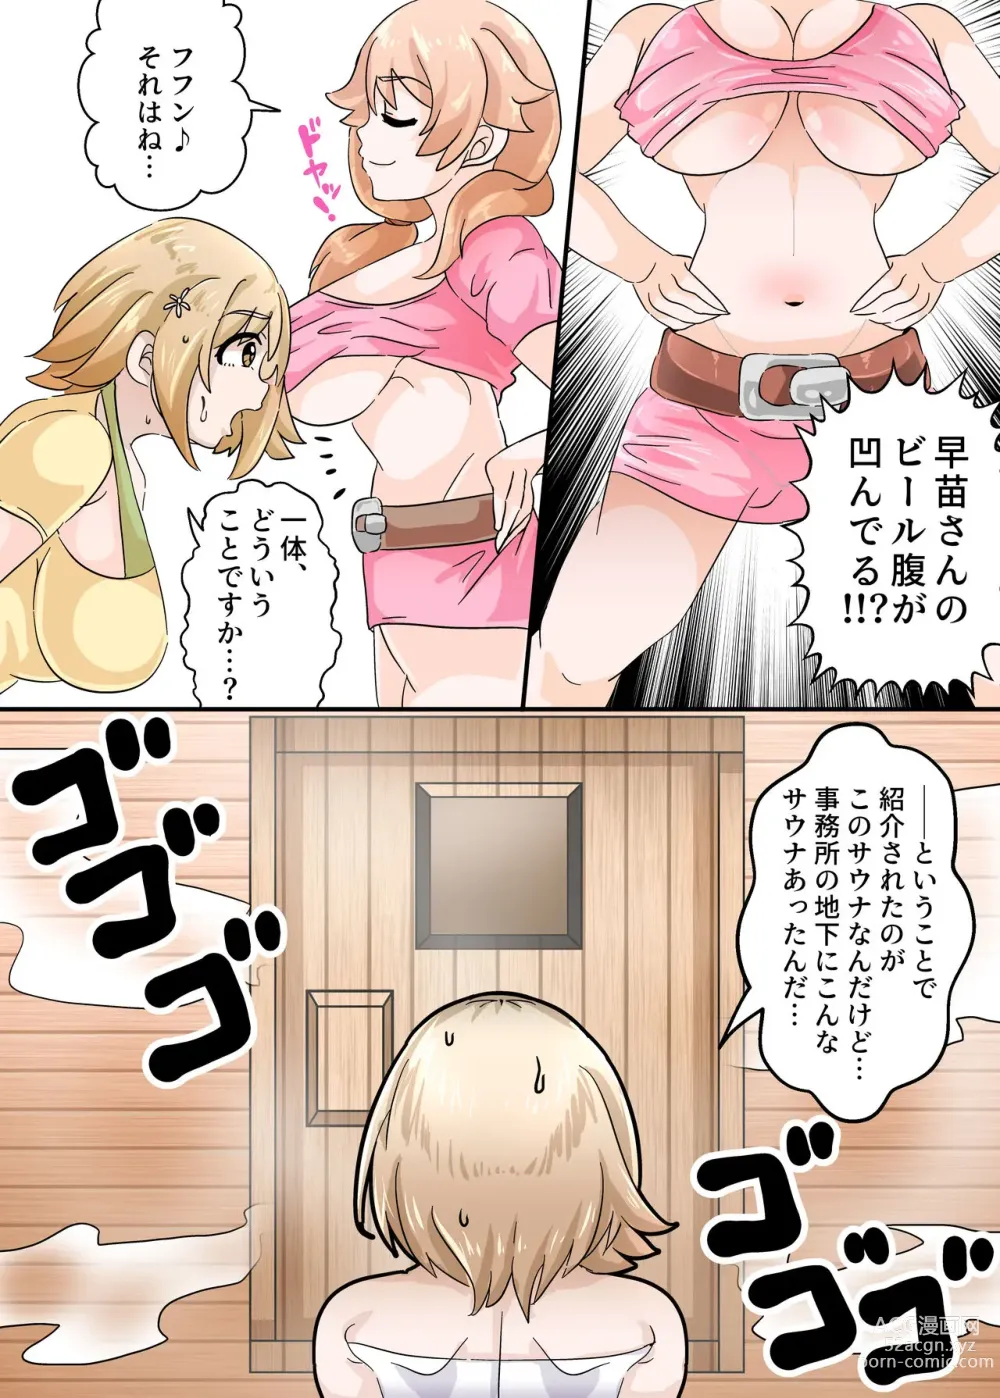 Page 3 of doujinshi Mimura Kanako no Sauna Diett